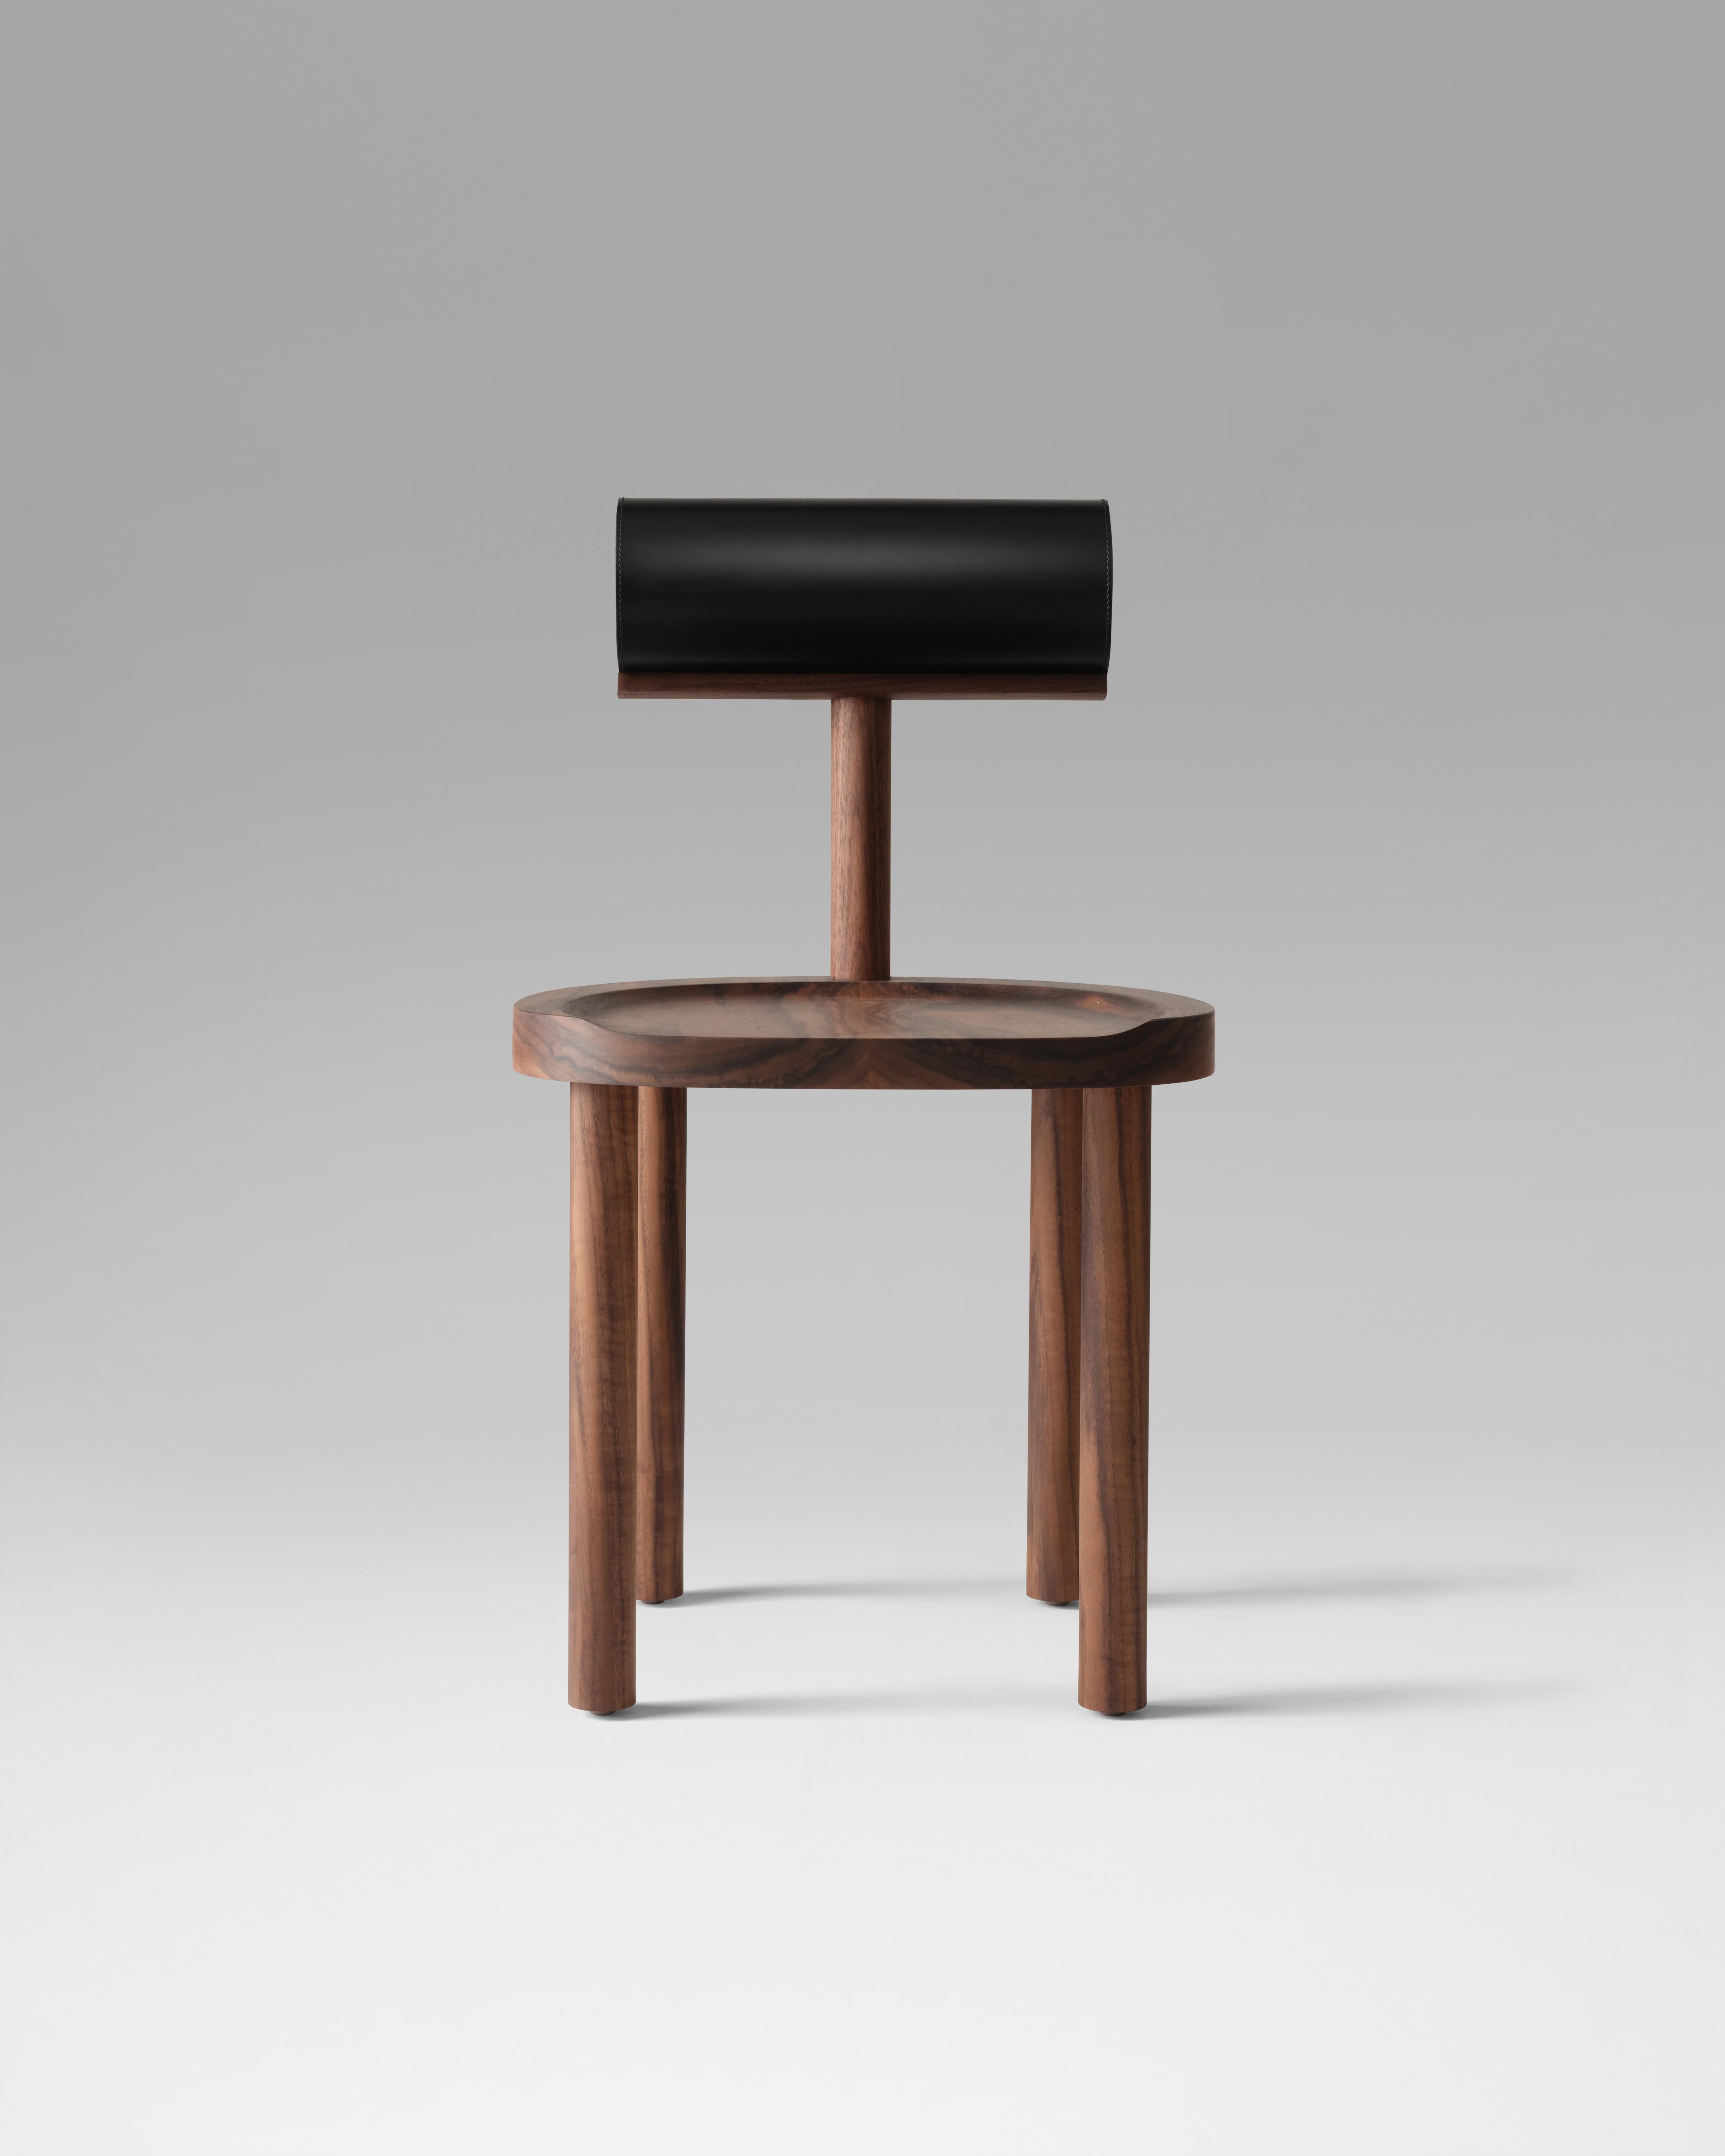 Der UNA-Stuhl verbindet eine runde Sitzfläche und Beine aus Holz mit einer ledergepolsterten zylindrischen Rückenlehne. Die Verwendung dieser fließenden Formen ermöglicht eine stärkere Konzentration auf die Details der Holzmaserung und der makellos